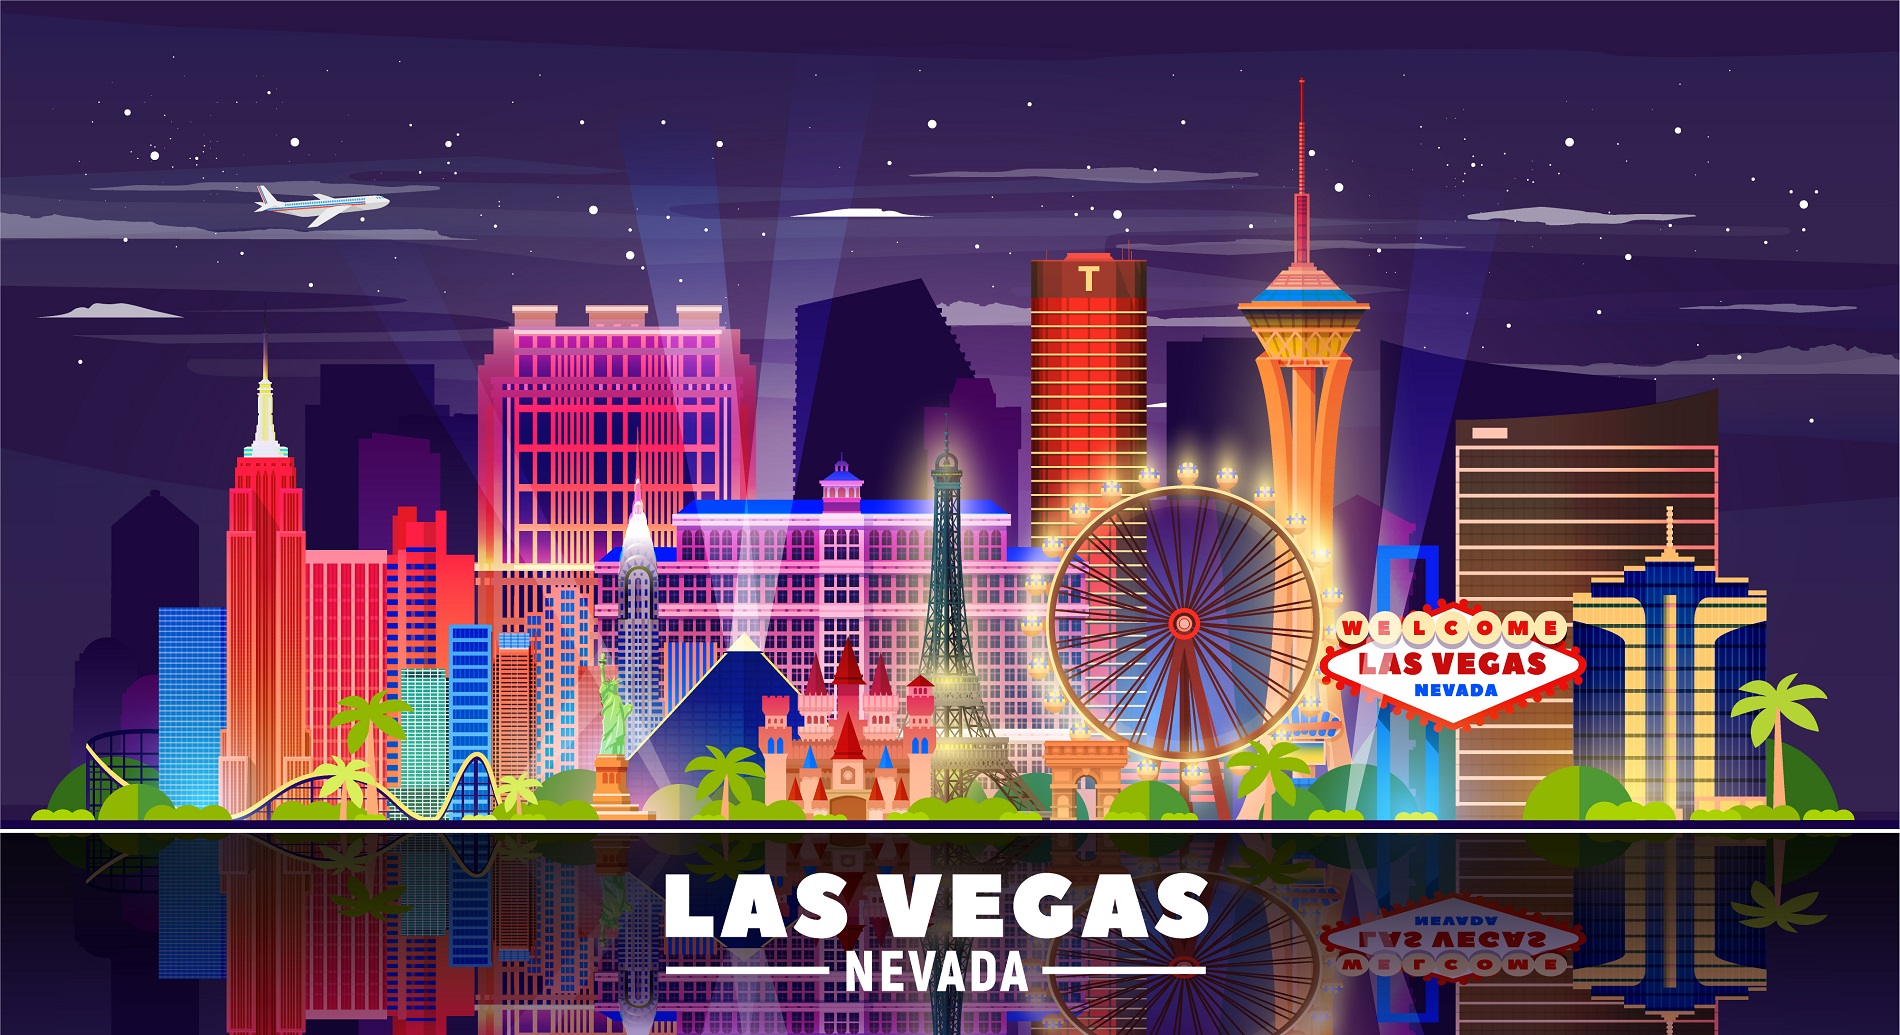 Grande Casino Vegas